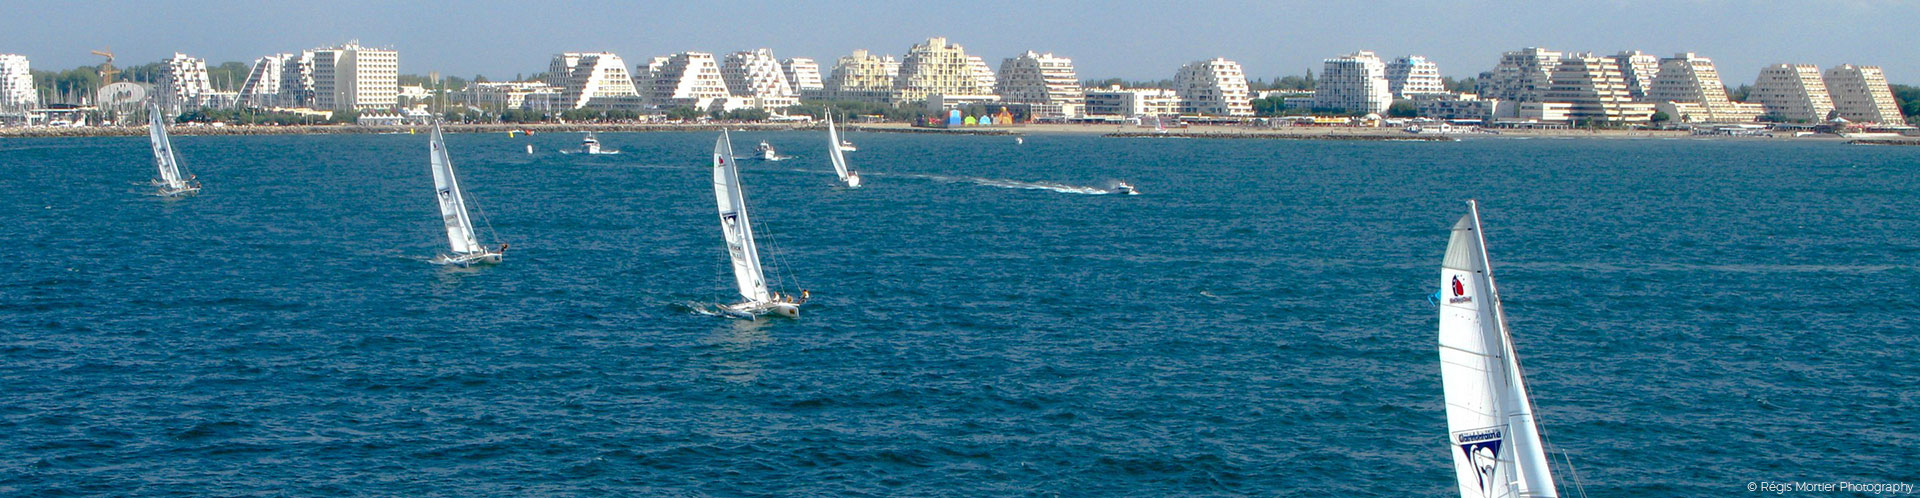 bateaux à voile sur la mer Méditerranée avec vue sur les immeubles de la Grande-Motte